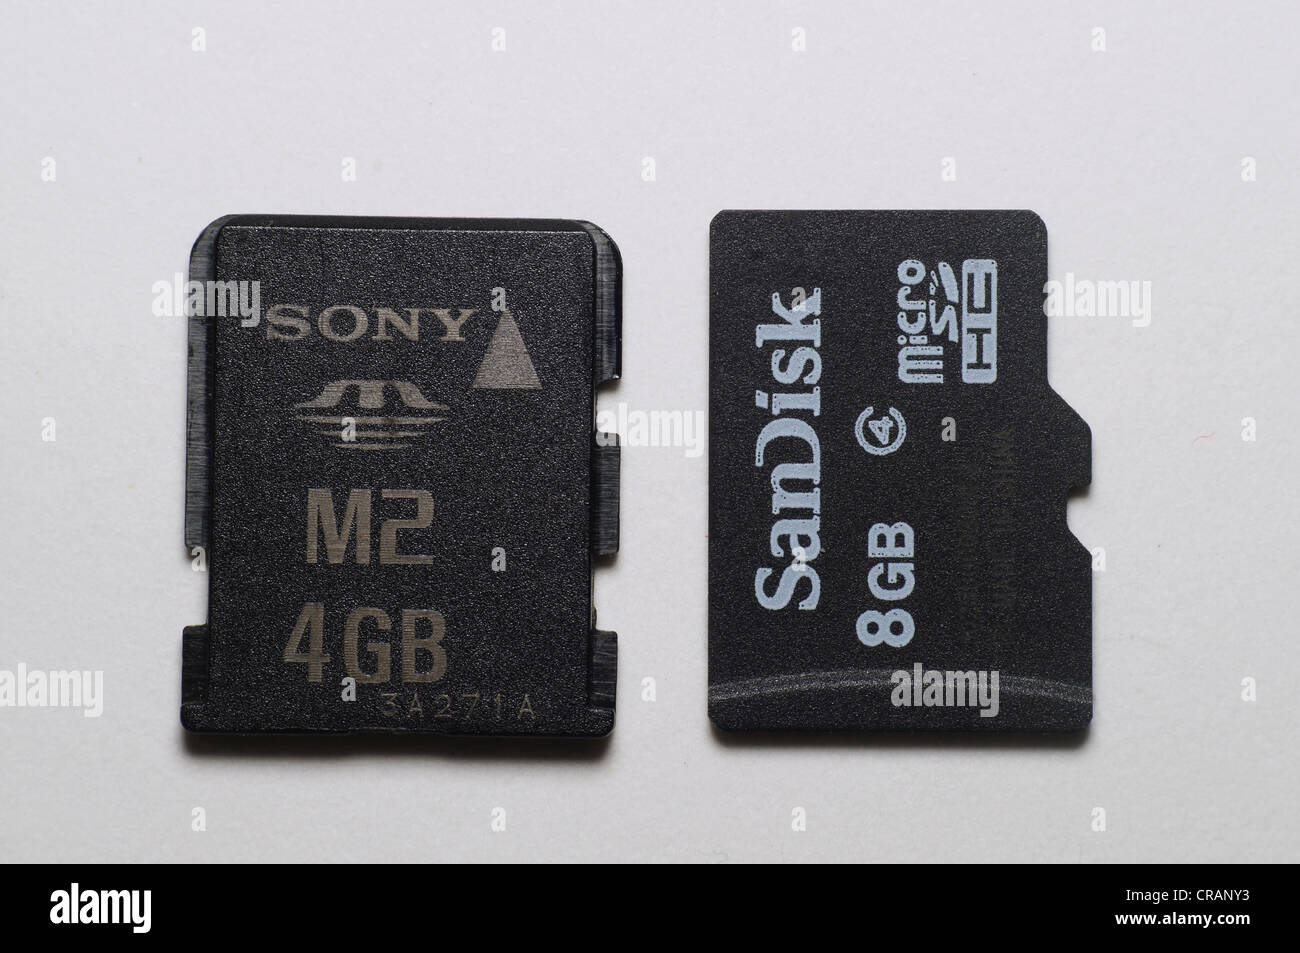 Cartes mémoire Micro SD, et M2 (haute résolution Photo Stock - Alamy